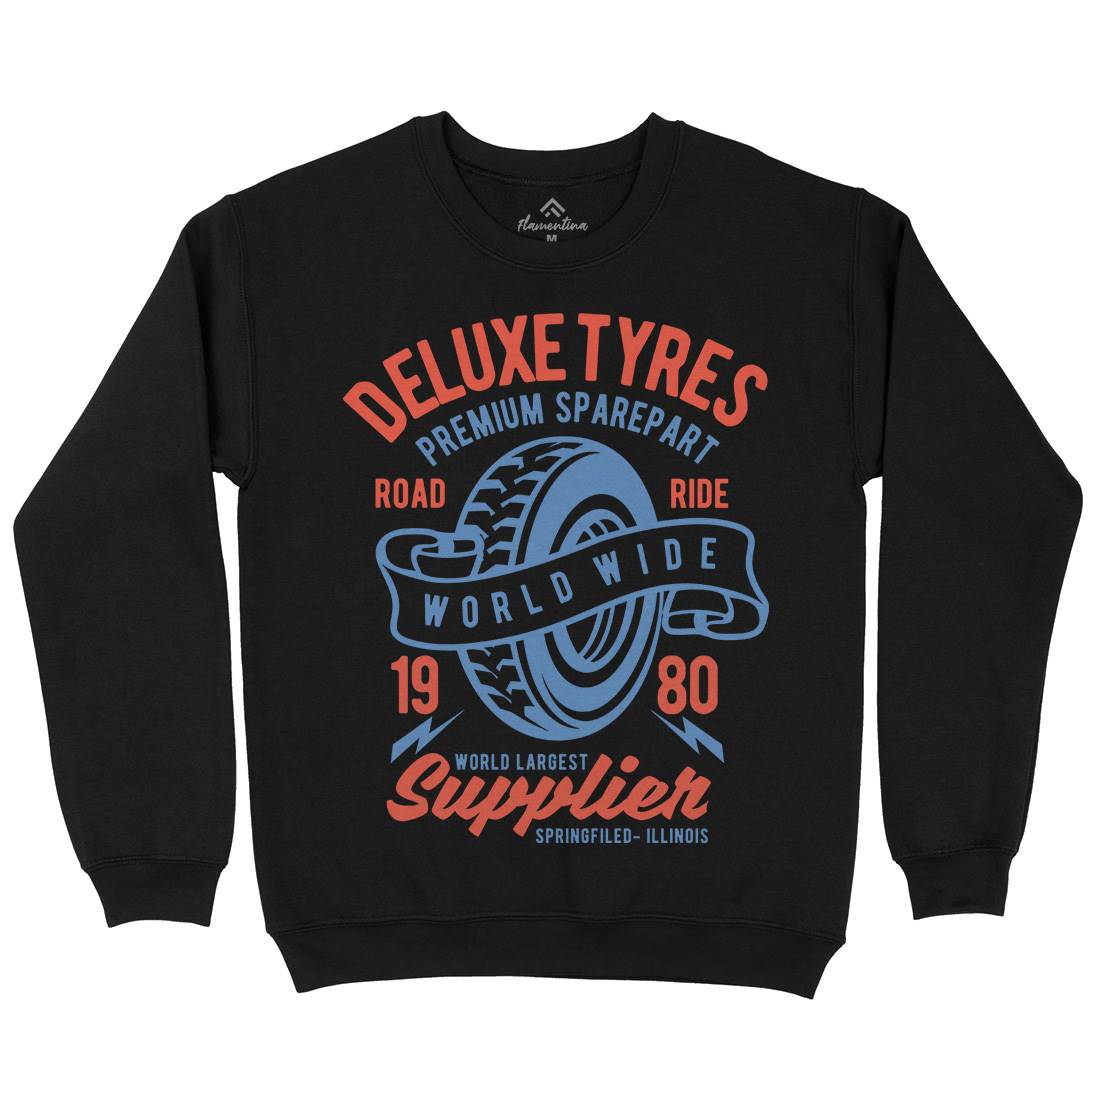 Deluxe Tyres Kids Crew Neck Sweatshirt Cars B204